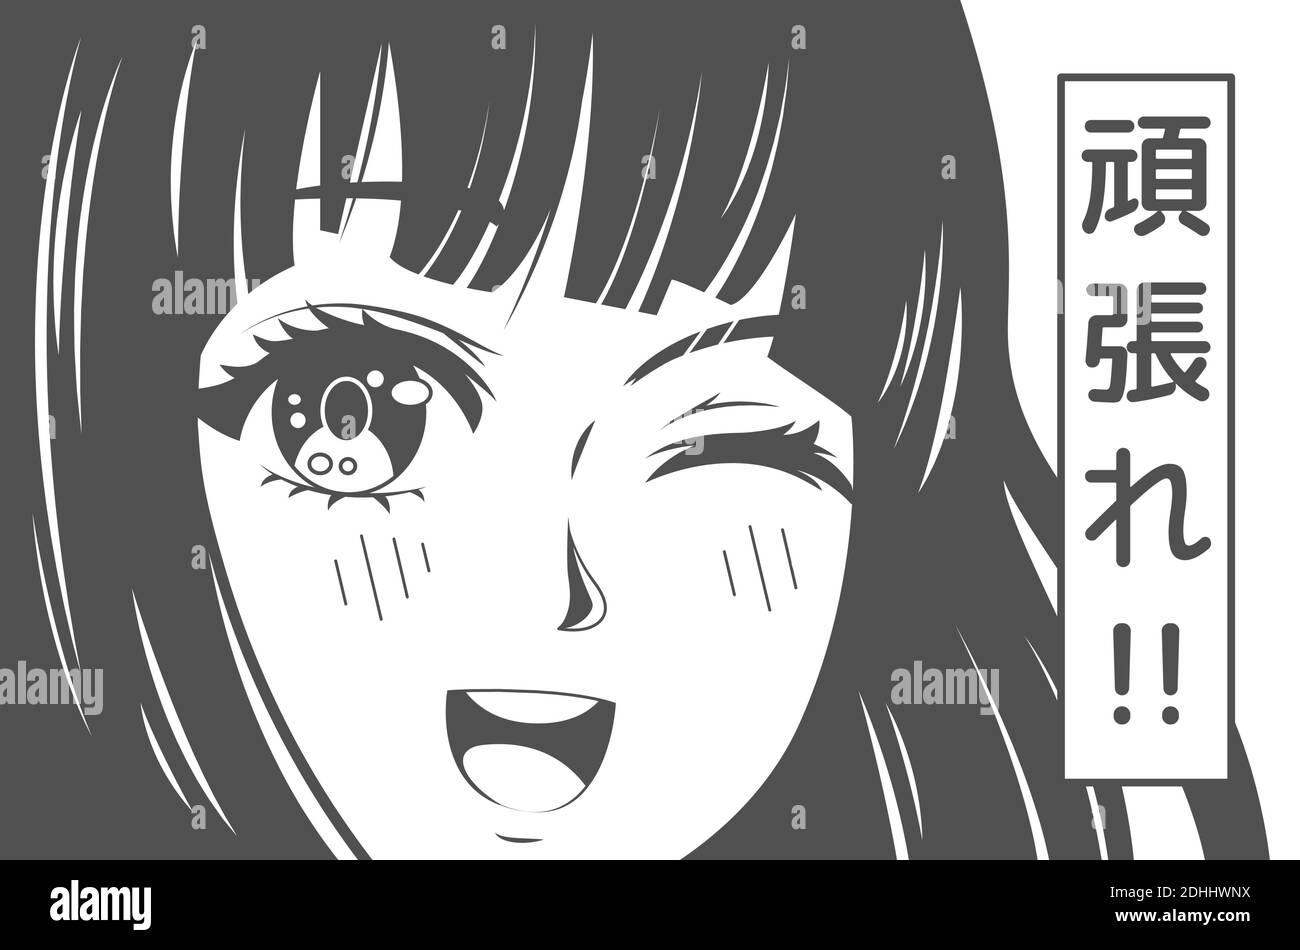 Anime-Poster. Kawaii winking Schule Mädchen Gesicht mit großen Augen im Manga-Stil und japanische Symbole bedeuten Go for it. T-Shirt mit japan-Vektor-Druck Stock Vektor